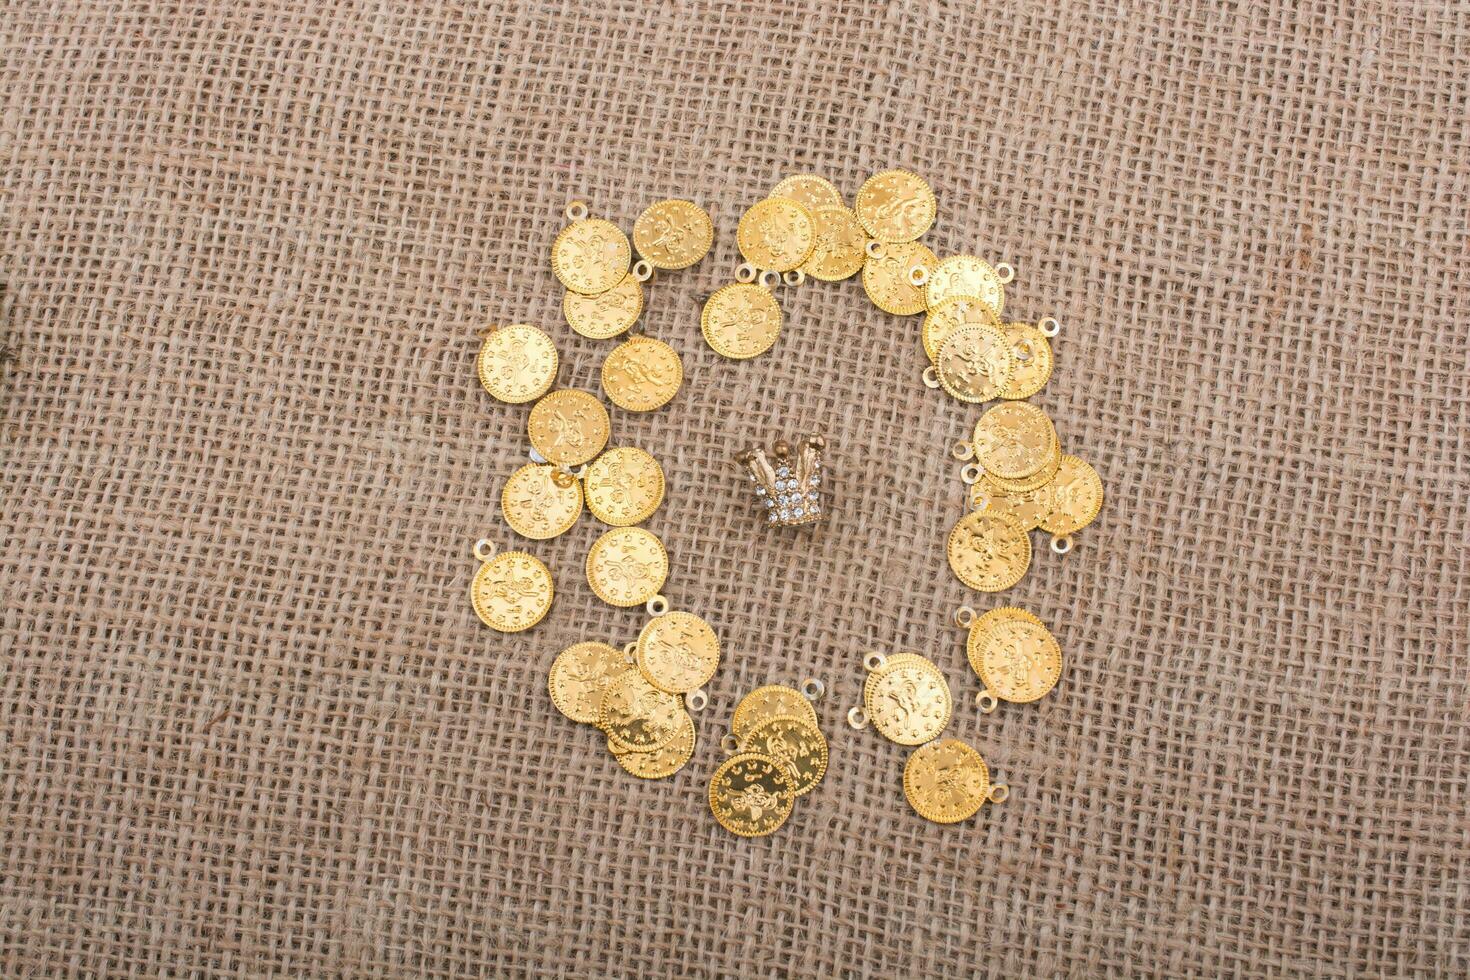 nep goud munten zijn in de omgeving van de weinig kroon foto